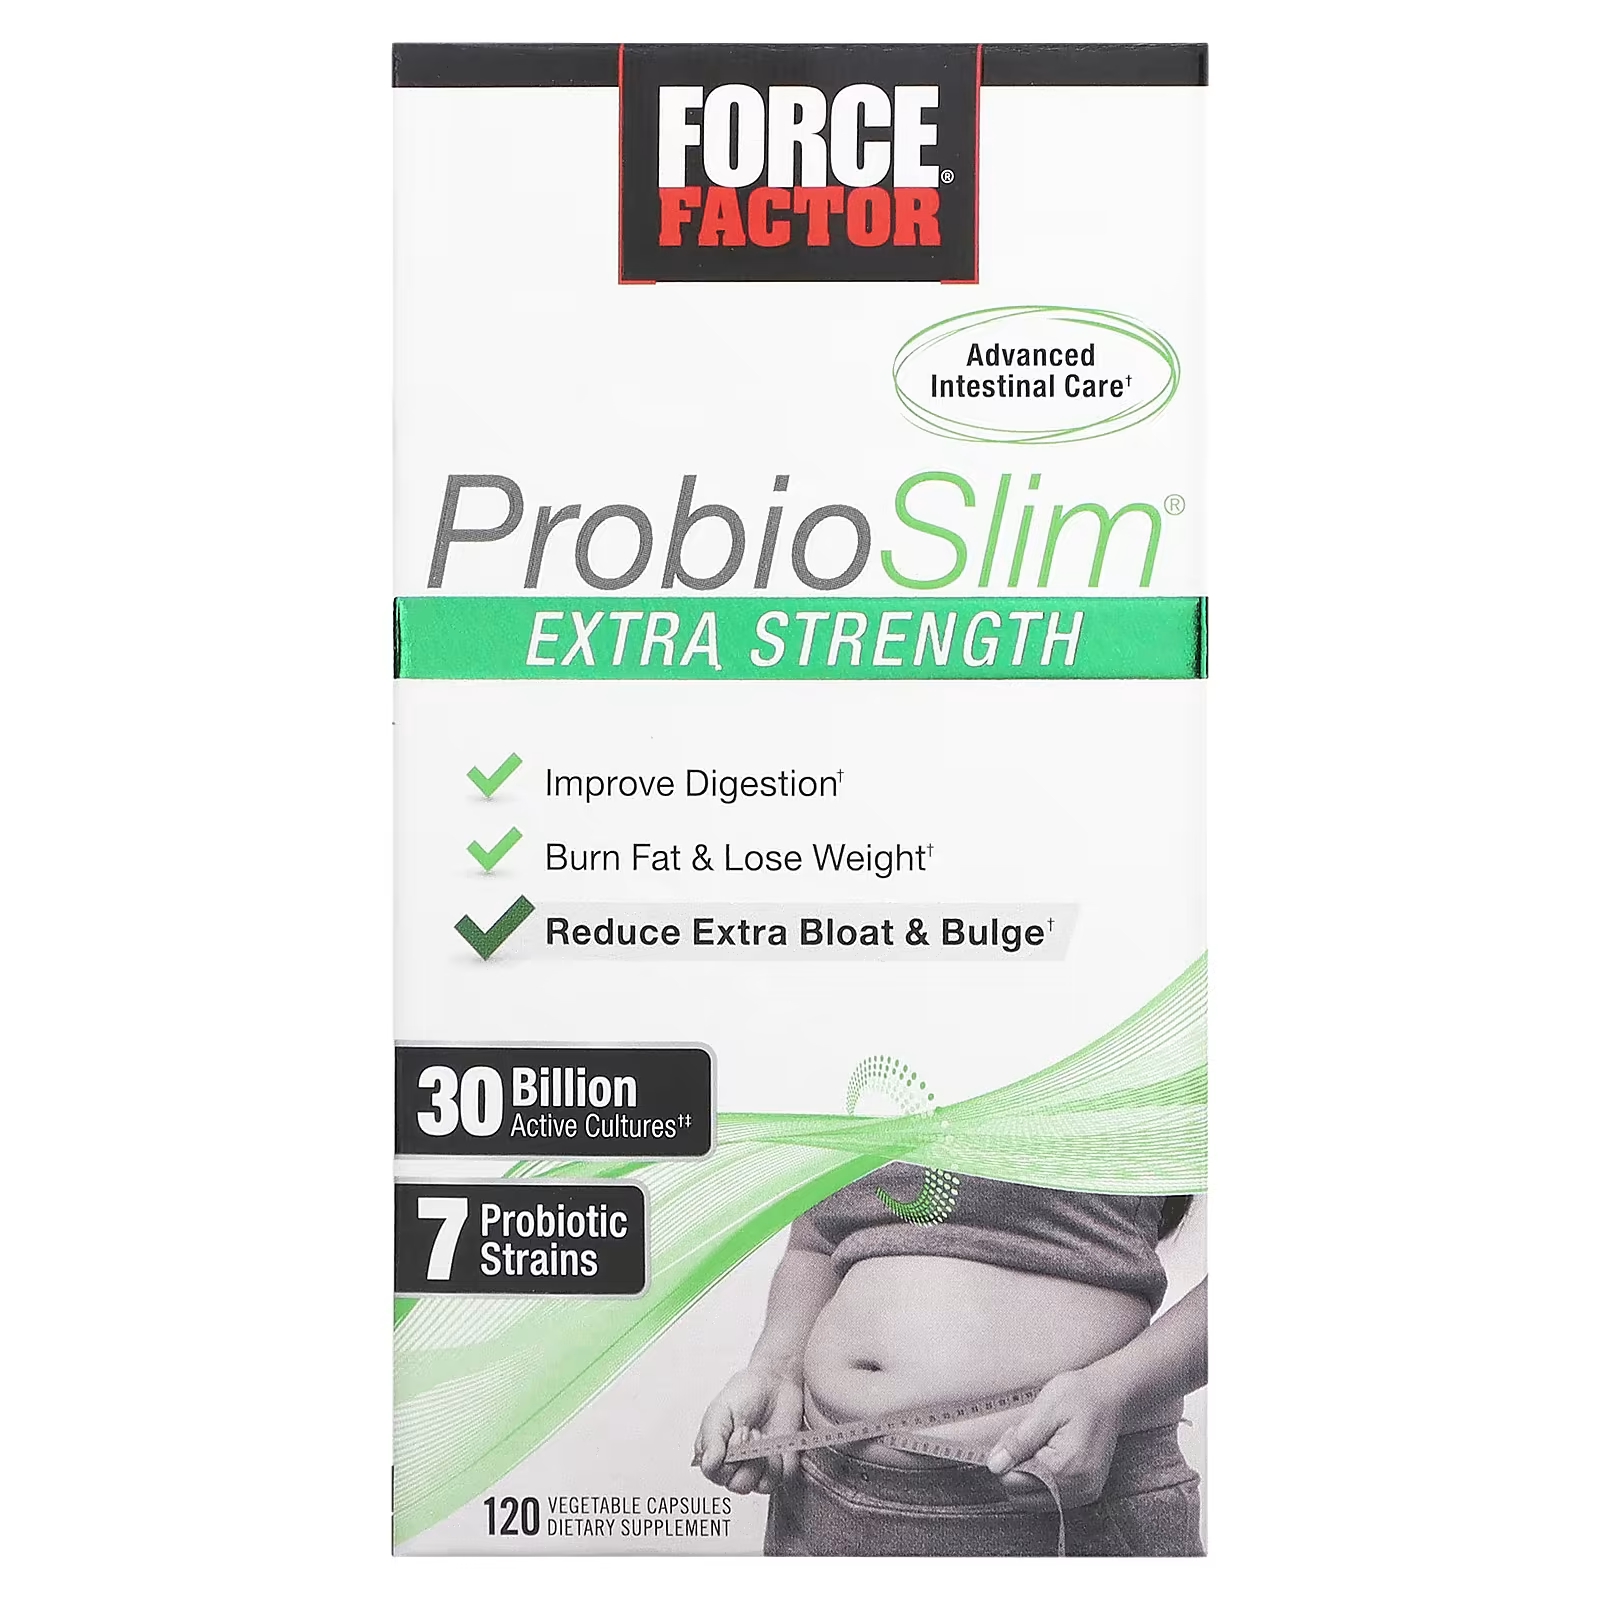 Force Factor ProbioSlim Extra Strength 30 миллиардов КОЕ, 120 растительных капсул probioslim essentials для похудения 120 растительных капсул force factor